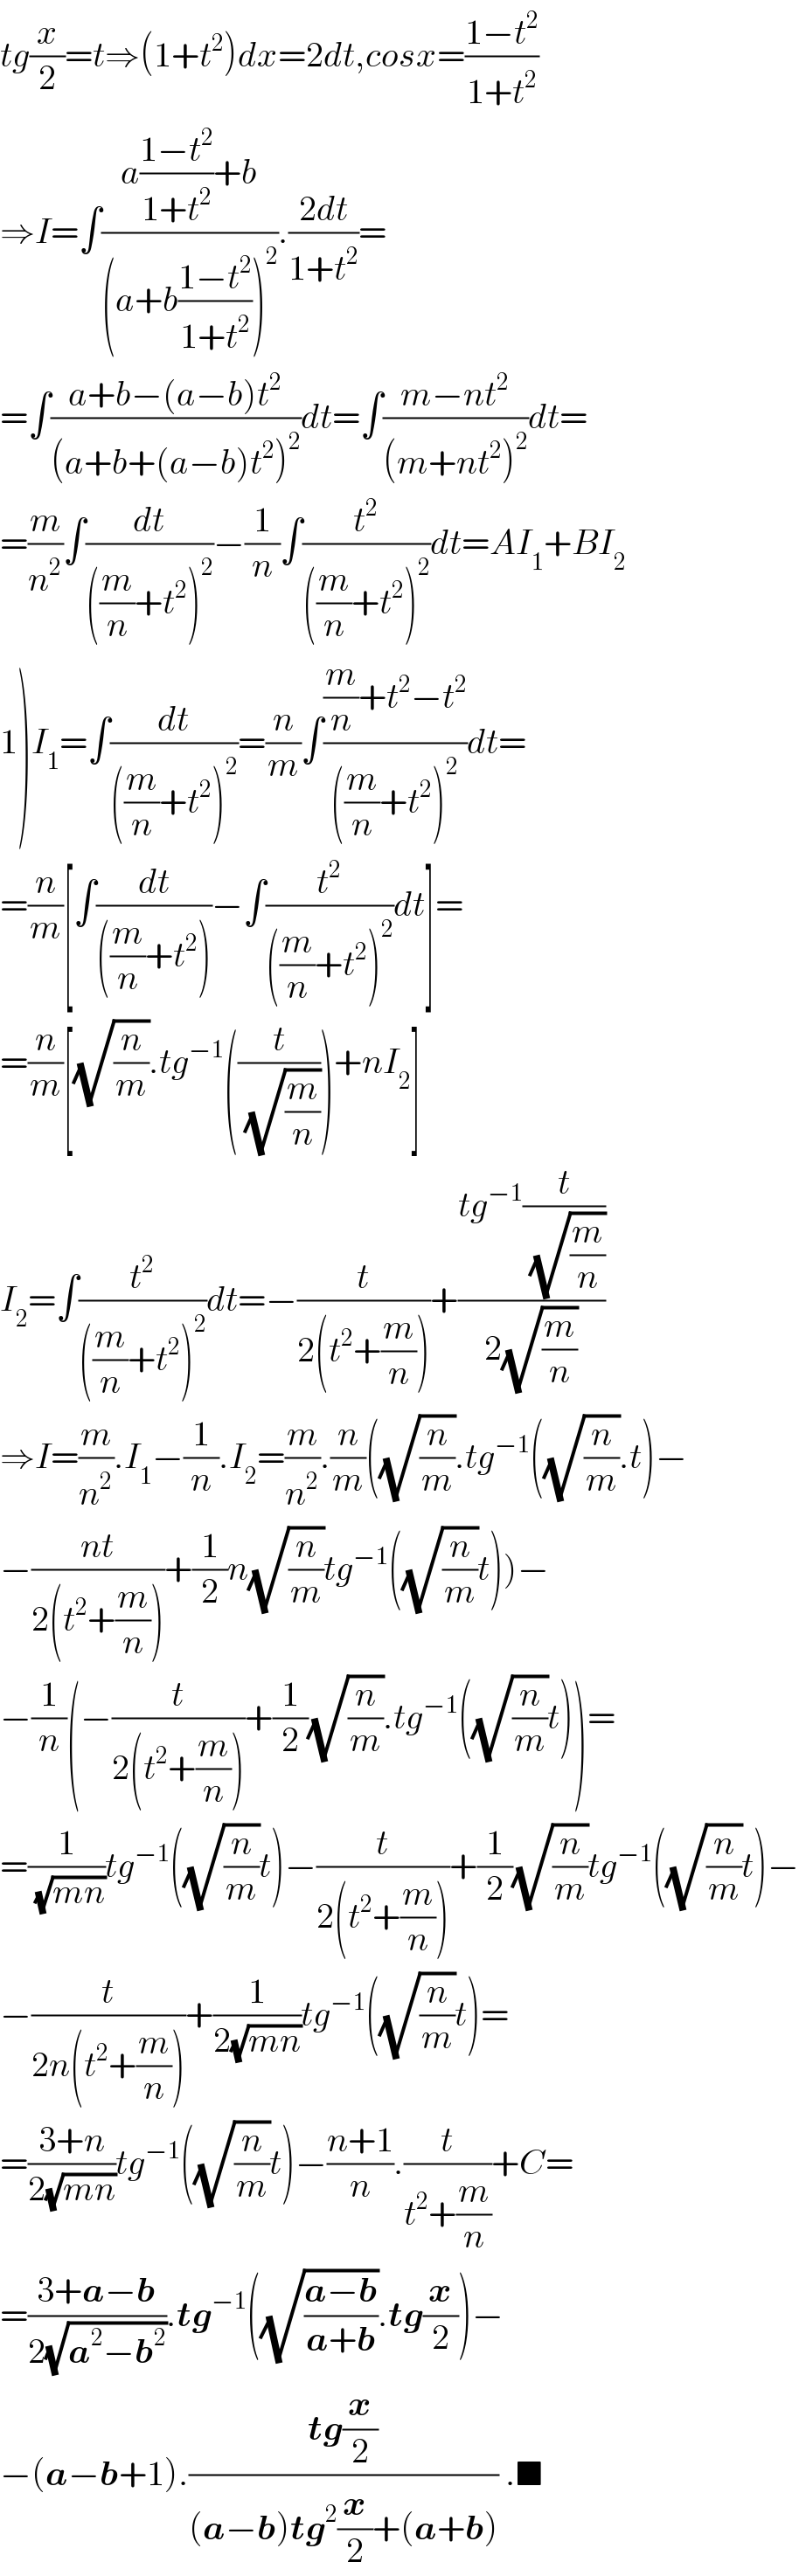 tg(x/2)=t⇒(1+t^2 )dx=2dt,cosx=((1−t^2 )/(1+t^2 ))  ⇒I=∫((a((1−t^2 )/(1+t^2 ))+b)/((a+b((1−t^2 )/(1+t^2 )))^2 )).((2dt)/(1+t^2 ))=  =∫((a+b−(a−b)t^2 )/((a+b+(a−b)t^2 )^2 ))dt=∫((m−nt^2 )/((m+nt^2 )^2 ))dt=  =(m/n^2 )∫(dt/(((m/n)+t^2 )^2 ))−(1/n)∫(t^2 /(((m/n)+t^2 )^2 ))dt=AI_1 +BI_2   1)I_1 =∫(dt/(((m/n)+t^2 )^2 ))=(n/m)∫(((m/n)+t^2 −t^2 )/(((m/n)+t^2 )^2 ))dt=  =(n/m)[∫(dt/(((m/n)+t^2 )))−∫(t^2 /(((m/n)+t^2 )^2 ))dt]=  =(n/m)[(√(n/m)).tg^(−1) ((t/(√(m/n))))+nI_2 ]  I_2 =∫(t^2 /(((m/n)+t^2 )^2 ))dt=−(t/(2(t^2 +(m/n))))+((tg^(−1) (t/(√(m/n))))/(2(√(m/n))))  ⇒I=(m/n^2 ).I_1 −(1/n).I_2 =(m/n^2 ).(n/m)((√(n/m)).tg^(−1) ((√(n/m)).t)−  −((nt)/(2(t^2 +(m/n))))+(1/2)n(√(n/m))tg^(−1) ((√(n/m))t))−  −(1/n)(−(t/(2(t^2 +(m/n))))+(1/2)(√(n/m)).tg^(−1) ((√(n/m))t))=  =(1/(√(mn)))tg^(−1) ((√(n/m))t)−(t/(2(t^2 +(m/n))))+(1/2)(√(n/m))tg^(−1) ((√(n/m))t)−  −(t/(2n(t^2 +(m/n))))+(1/(2(√(mn))))tg^(−1) ((√(n/m))t)=  =((3+n)/(2(√(mn))))tg^(−1) ((√(n/m))t)−((n+1)/n).(t/(t^2 +(m/n)))+C=  =((3+a−b)/(2(√(a^2 −b^2 )))).tg^(−1) ((√((a−b)/(a+b))).tg(x/2))−  −(a−b+1).((tg(x/2))/((a−b)tg^2 (x/2)+(a+b))) .■  